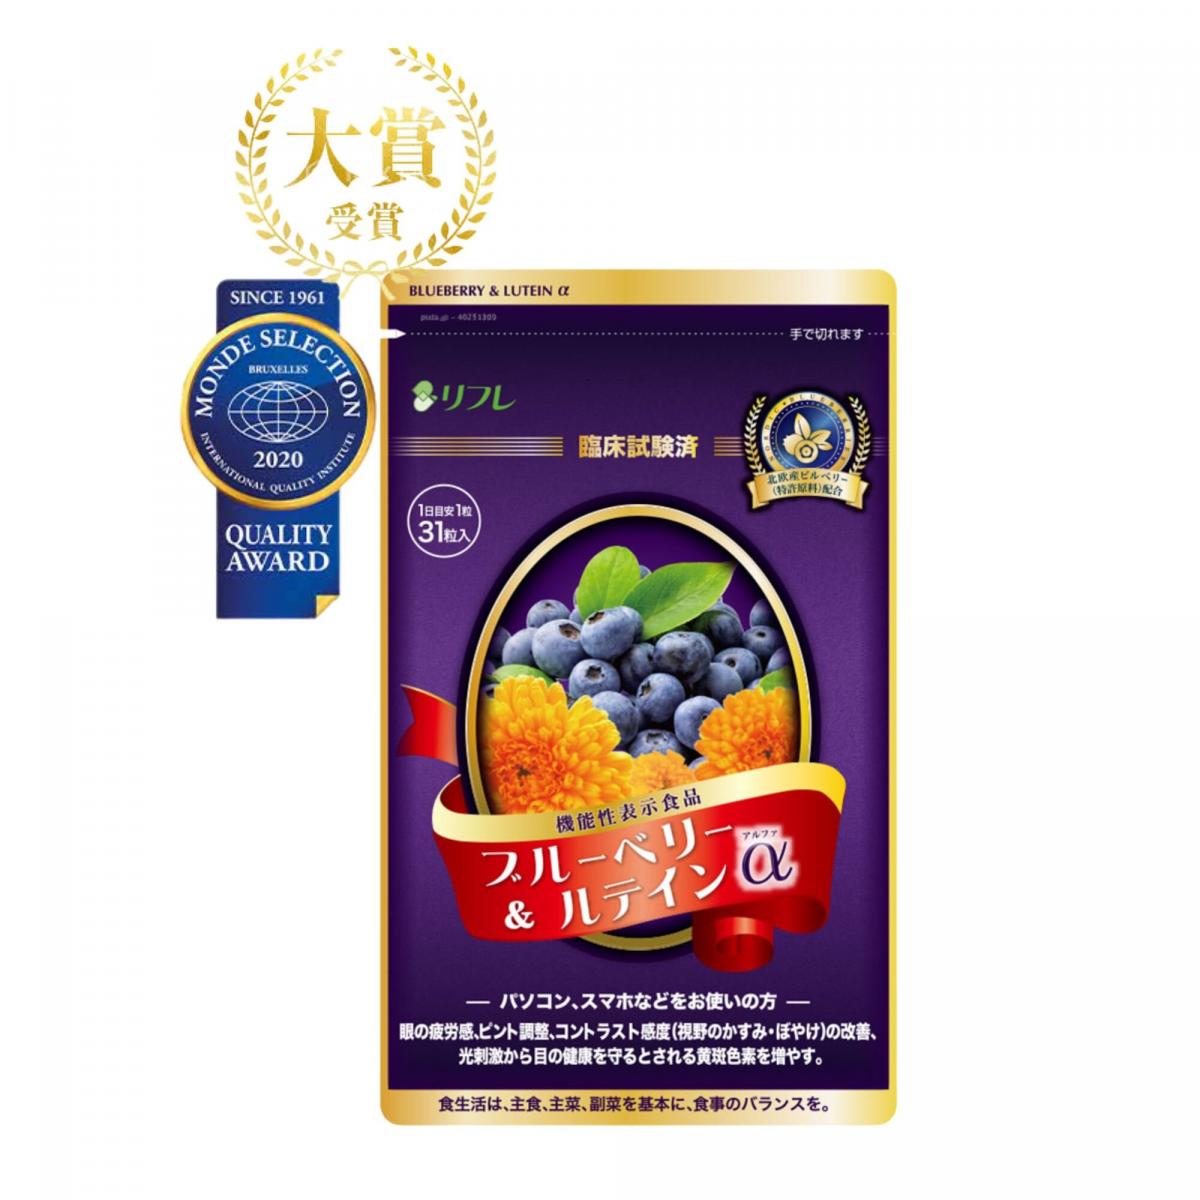 藍莓葉黃素明目丸α升級版 | 日本製造, 金賞得獎